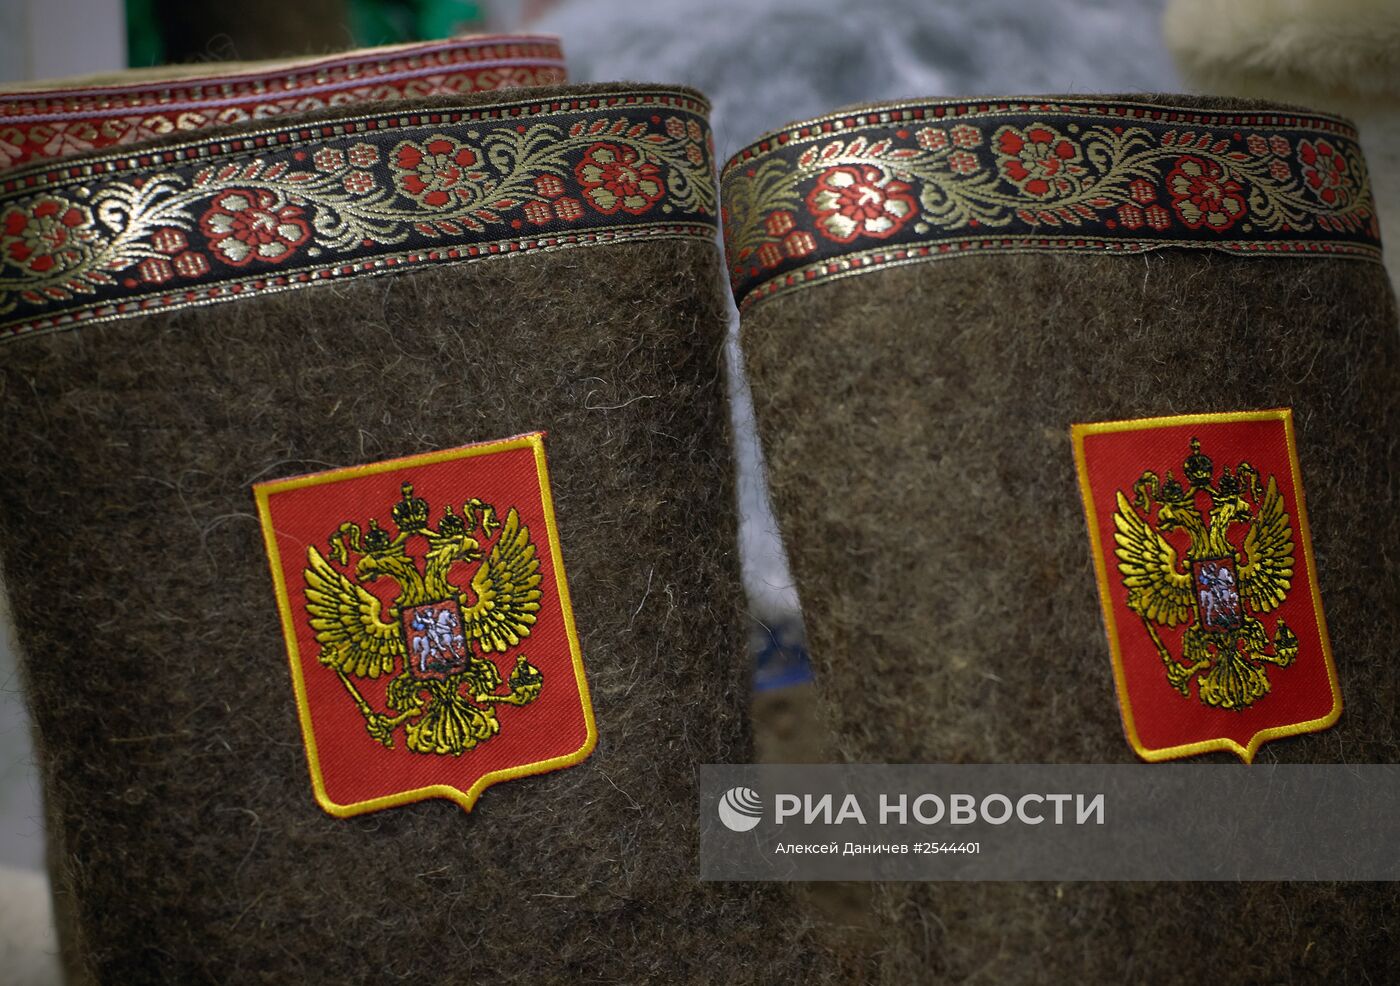 Презентация новой коллекции валенок с патриотической символикой России